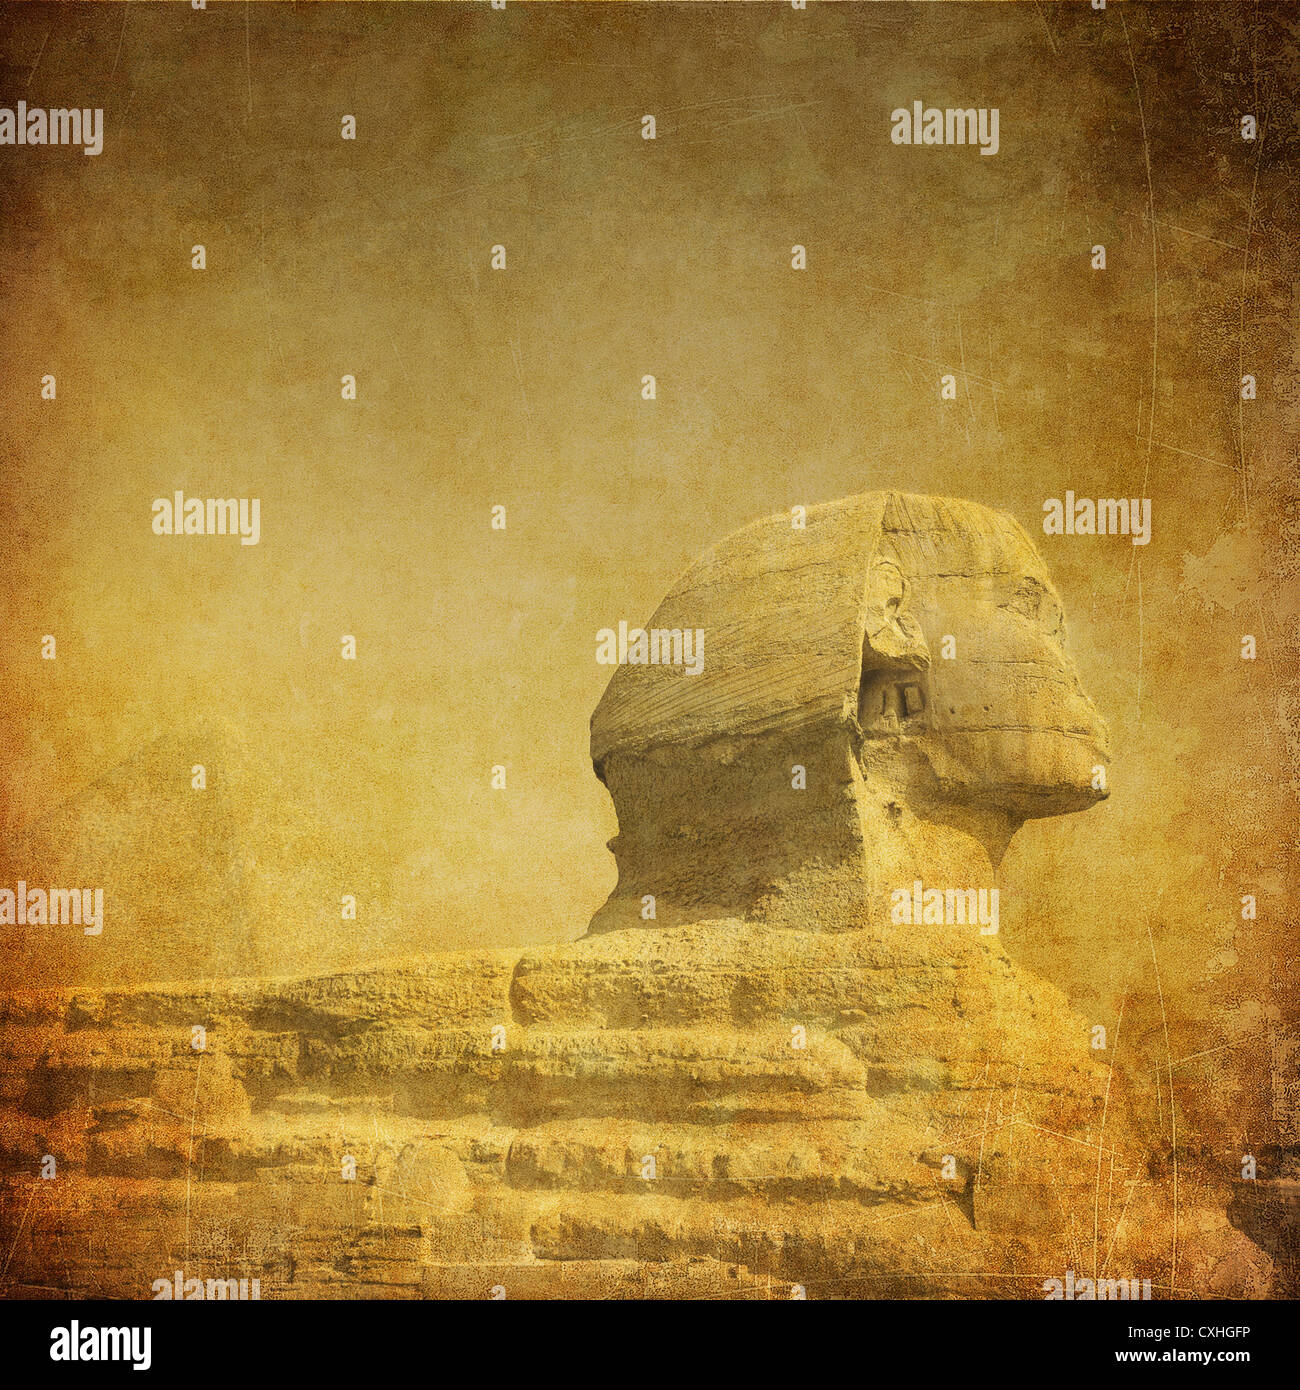 Immagine di grunge di sphynx e piramide Foto Stock